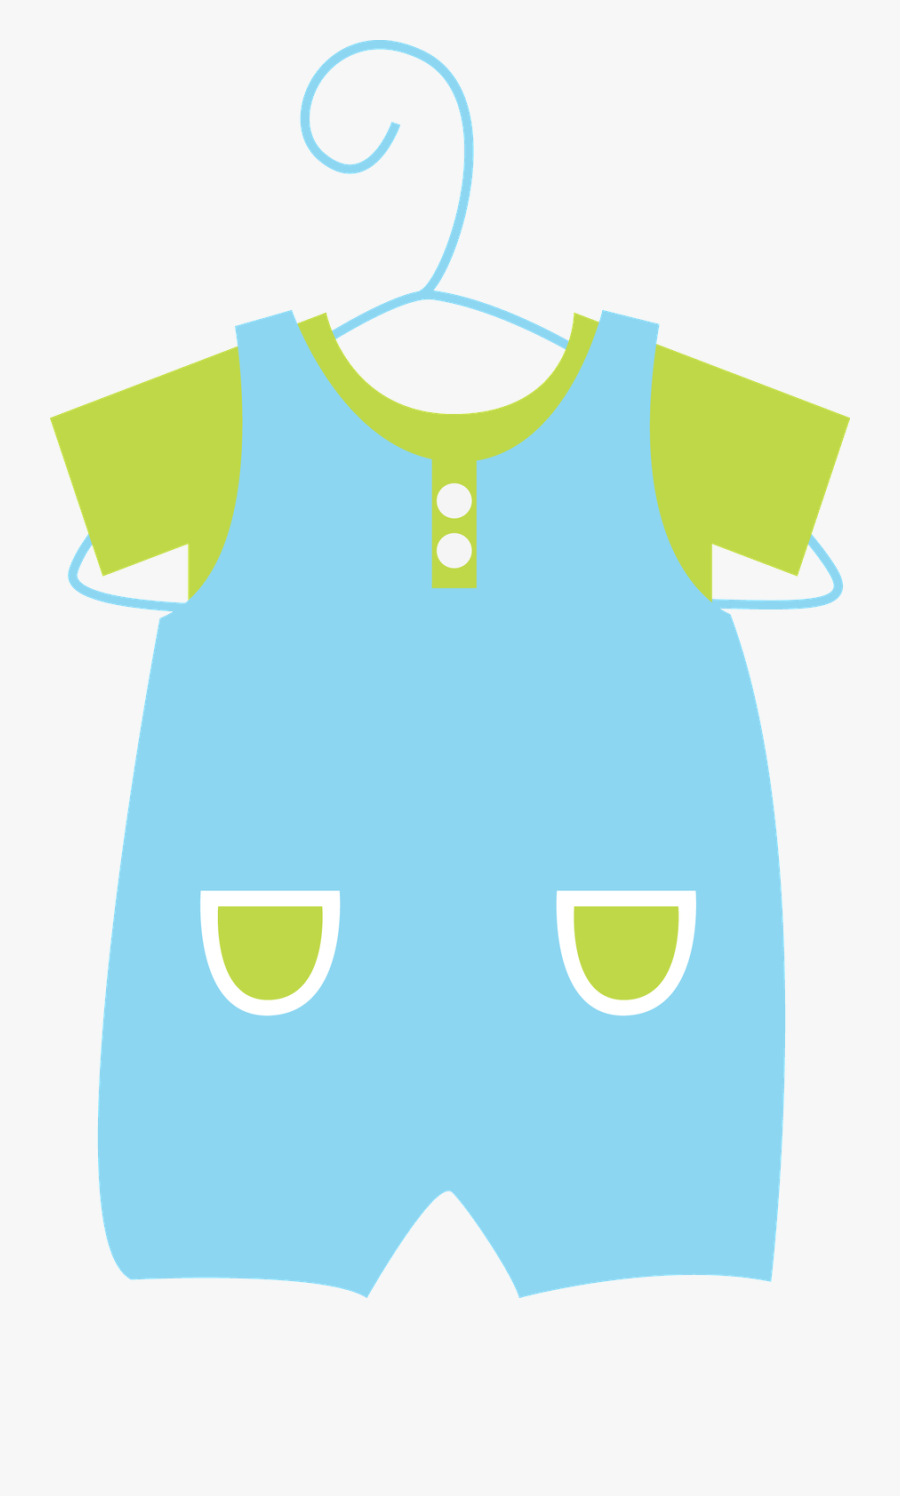 Clip Art Y Pinterest Templates - Baby Clothes Art Clip, Transparent Clipart